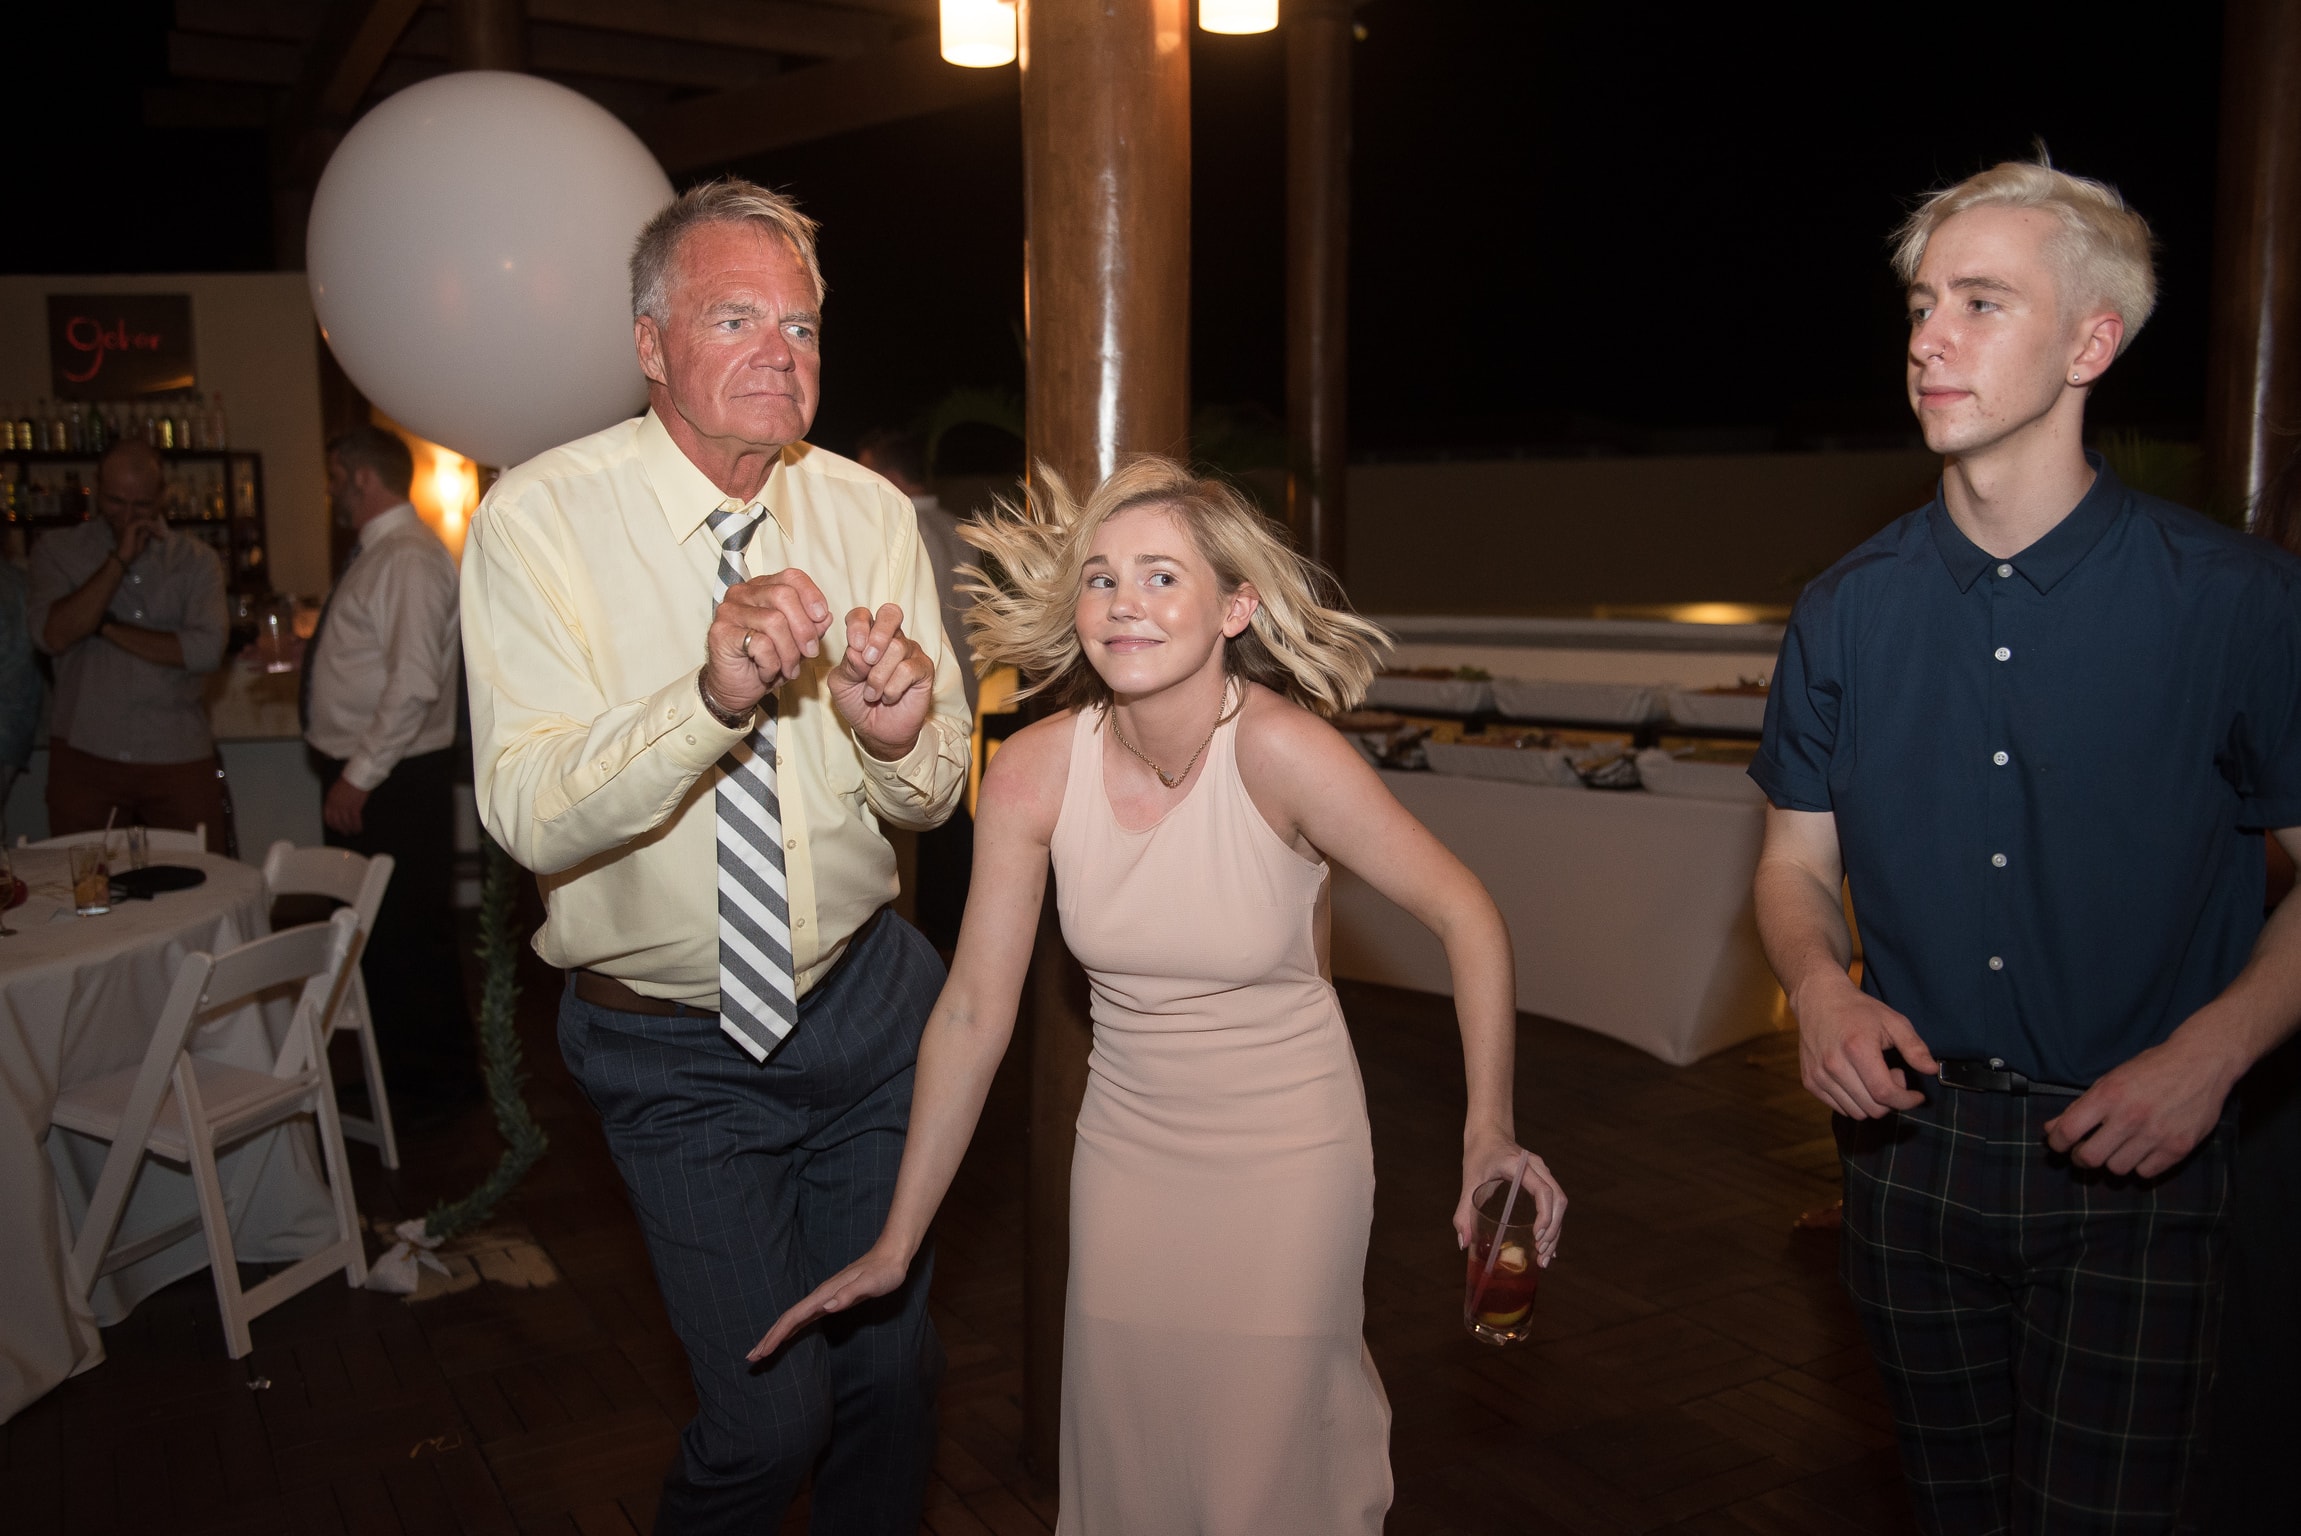 Wedding guests dancing 